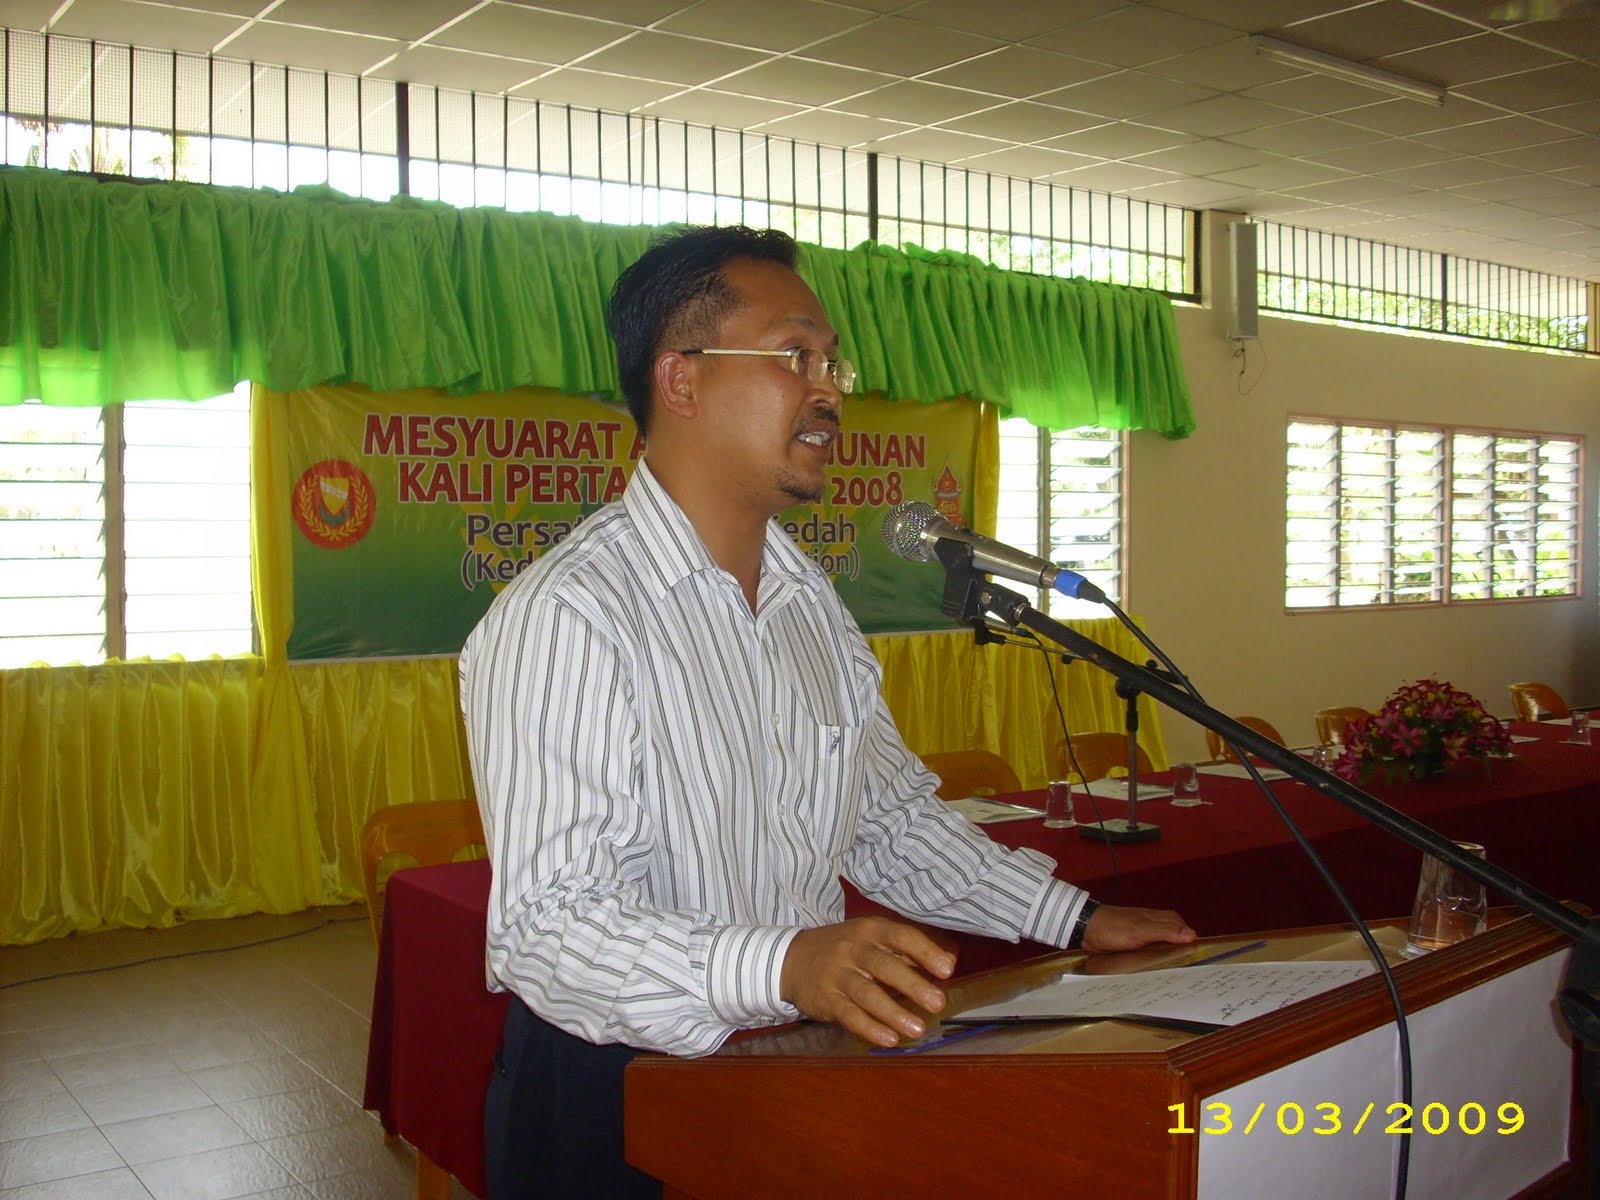 Persatuan Siam Kedah (Kedah Siamese Association): June 2008